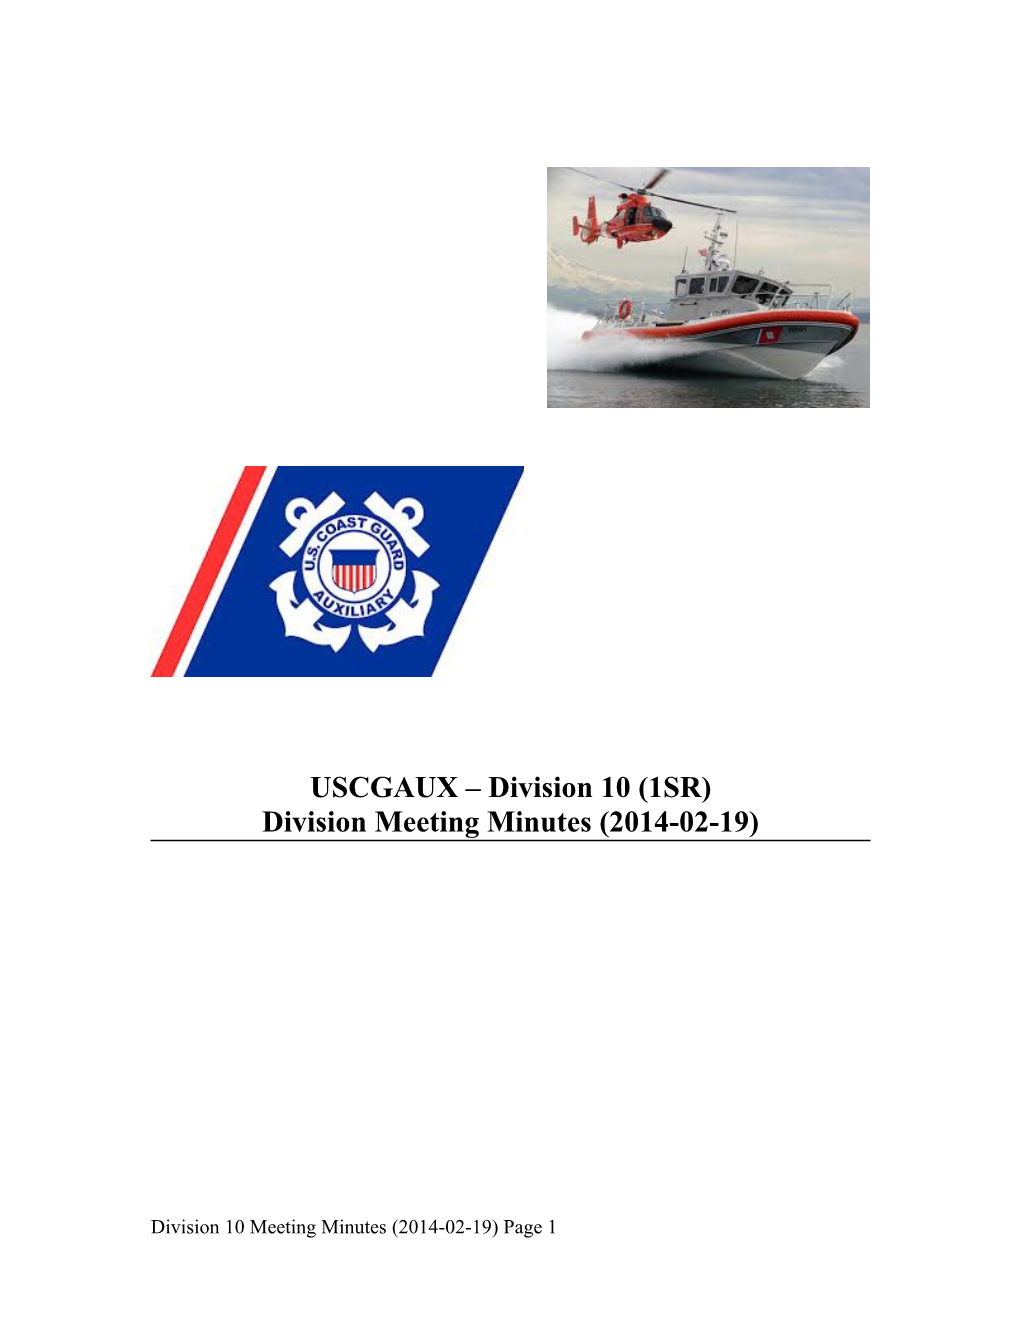 USCGAUX Division 10 (1SR)